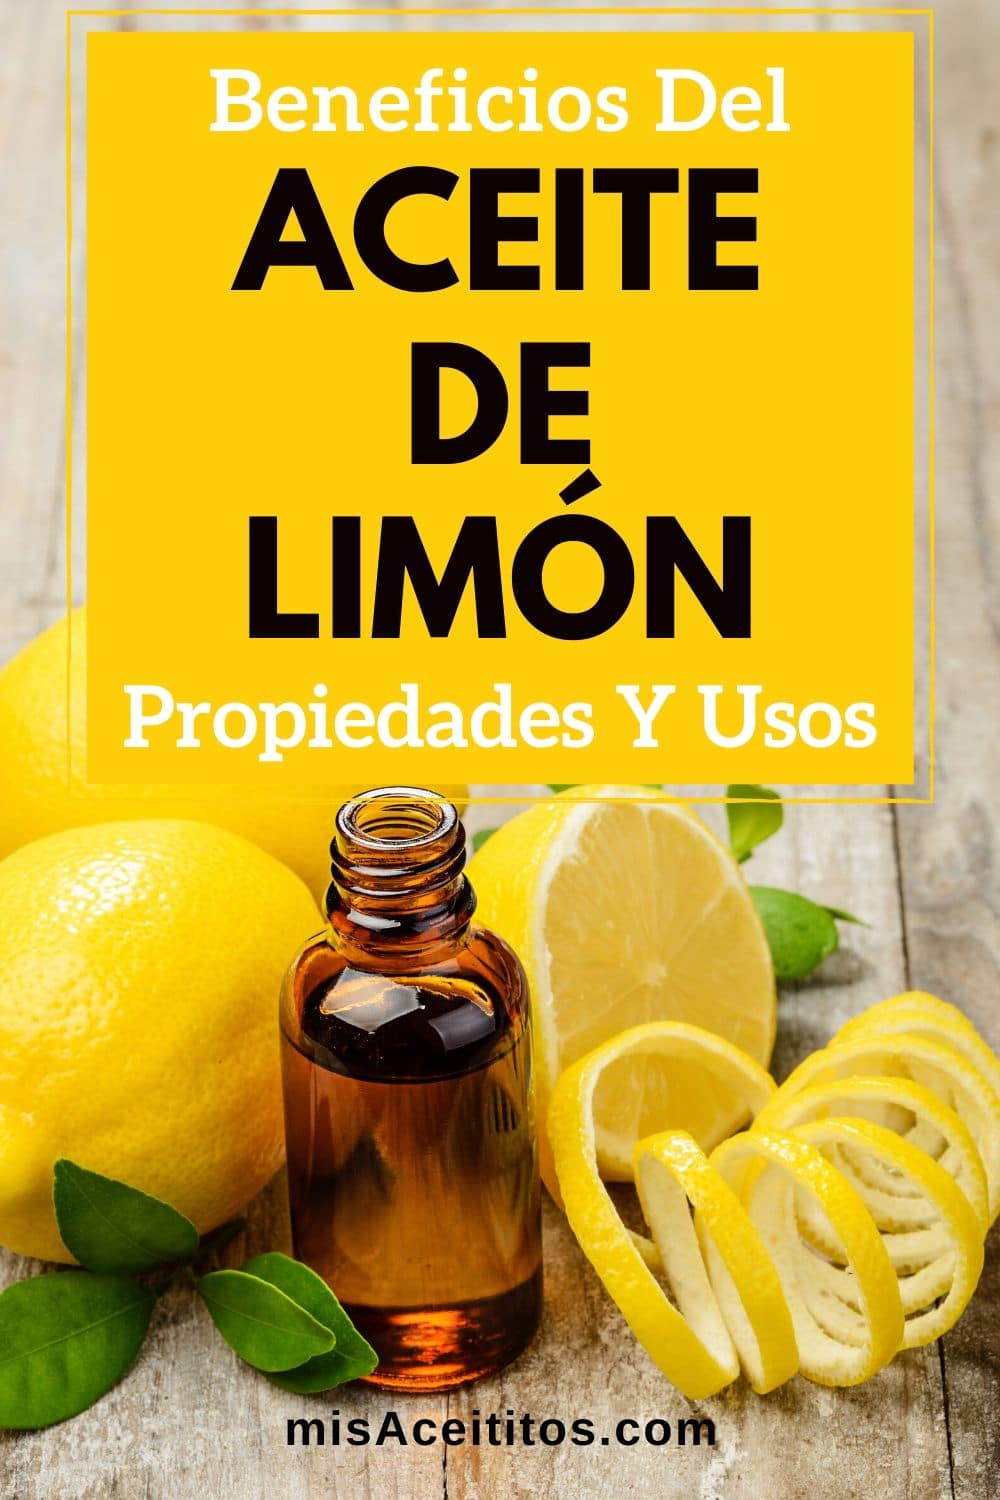 Los beneficios del aceite esencial de limón lo hace ideal para el cabello, la piel y la cara. También mejora el bienestar físico y emocional. En casa limpia y desinfecta.